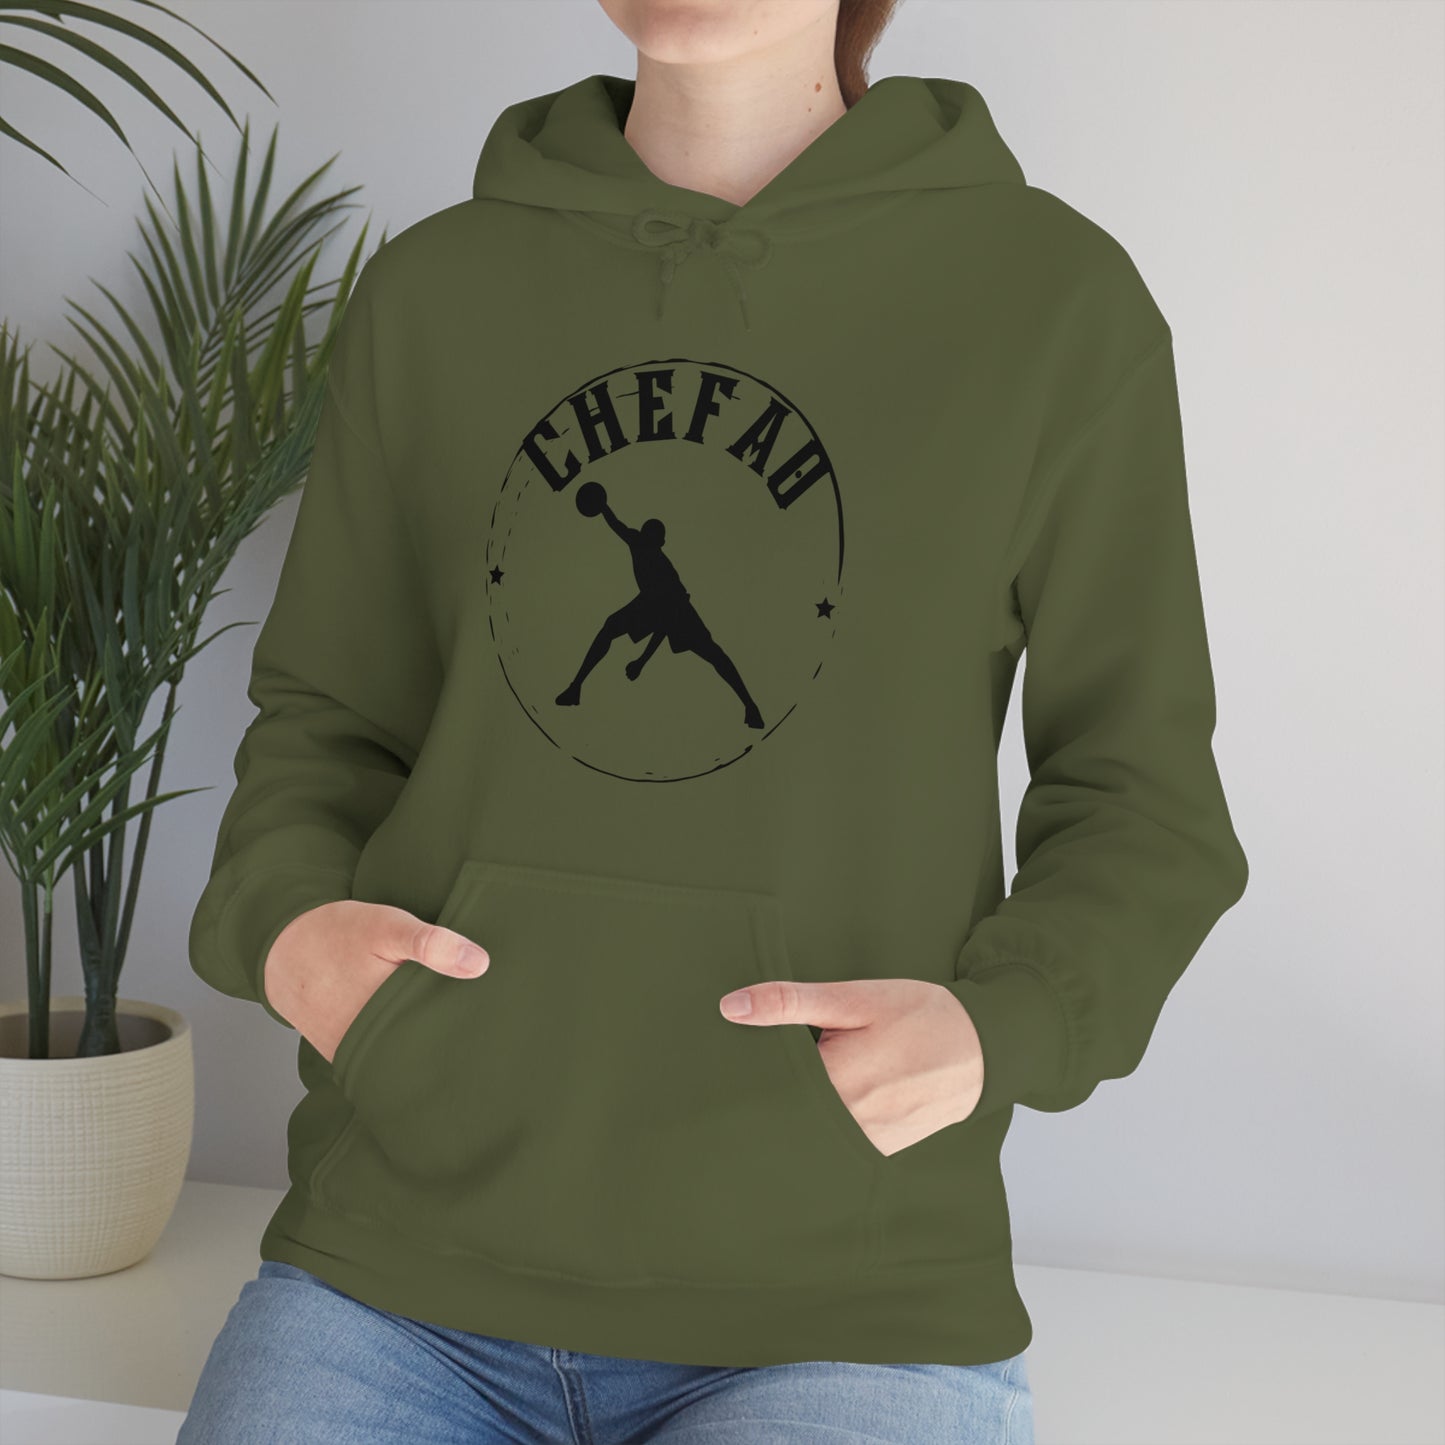 Chefao Basketball III, Unisex Heavy Blend Hooded Sweatshirt